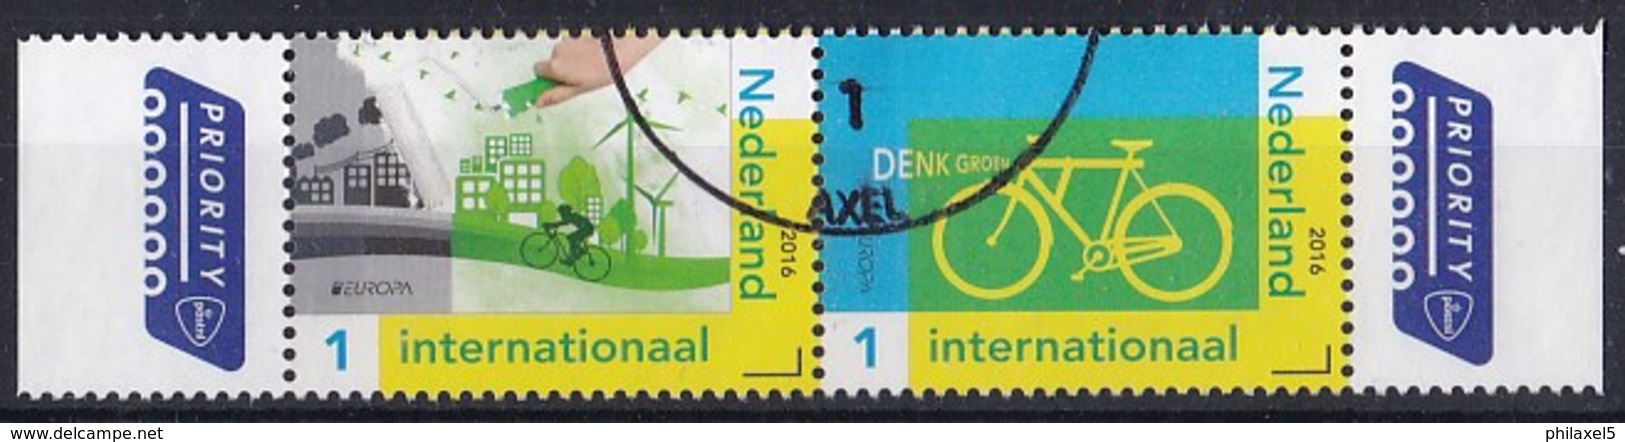 Nederland - PostEurop 2016 - Denk Groen - Fiets/windmolens - Gebruikt/gebraucht/used - NVPH 3399/3400 Strook - Oblitérés